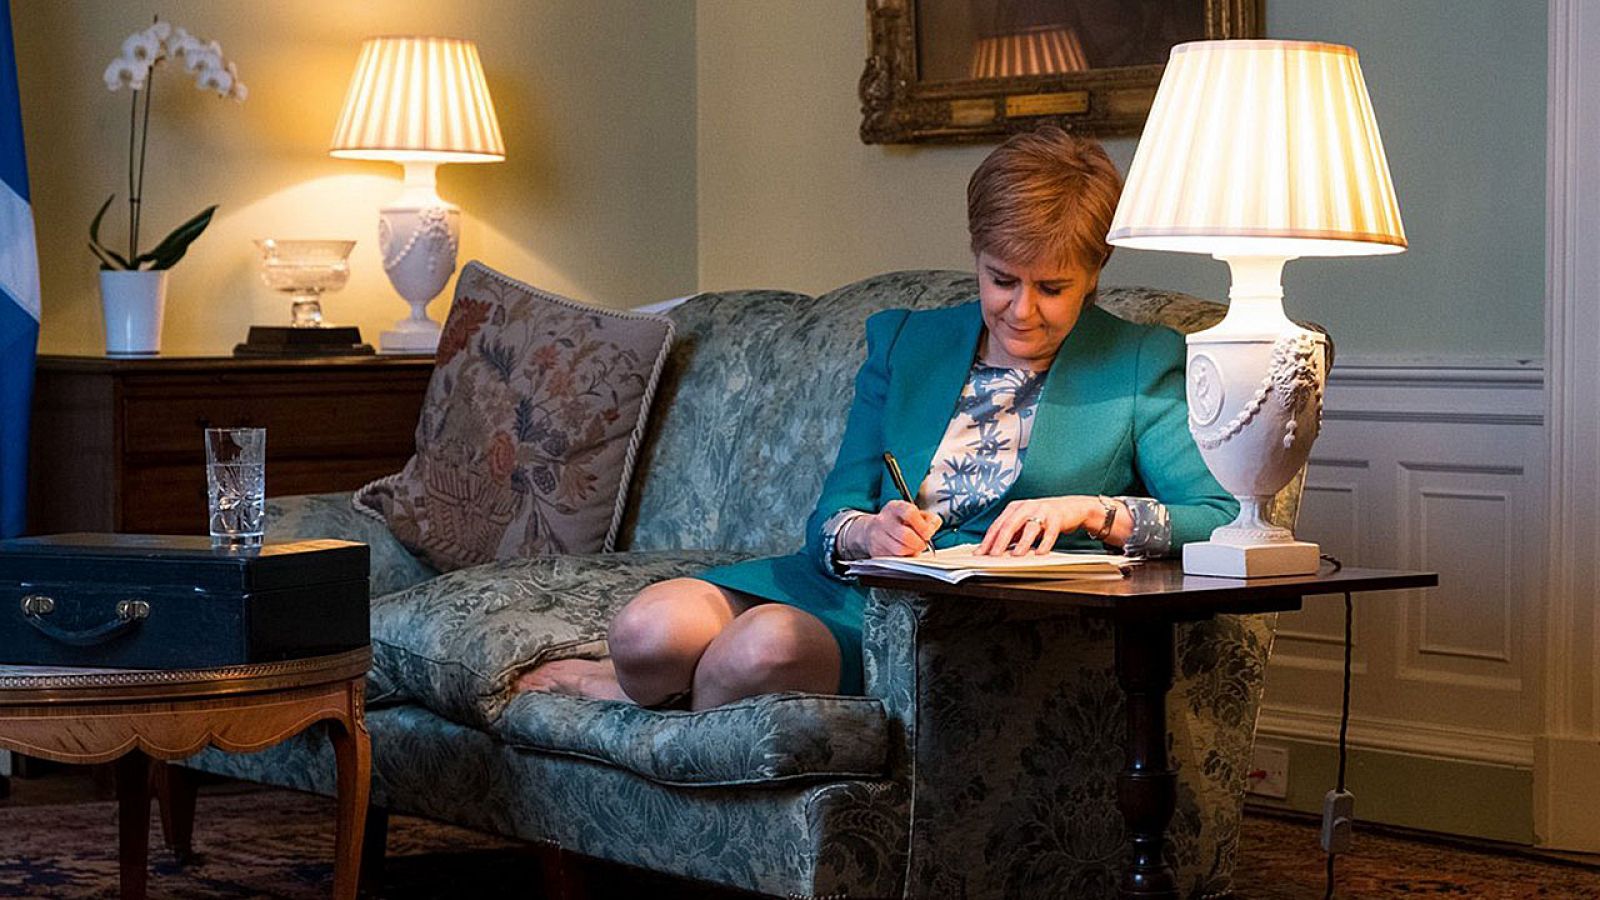 La ministra principal de Escocia, Nicola Sturgeon, trabaja en la redacción de la carta a Theresa May, en Bute House, Edimburgo, Escocia.